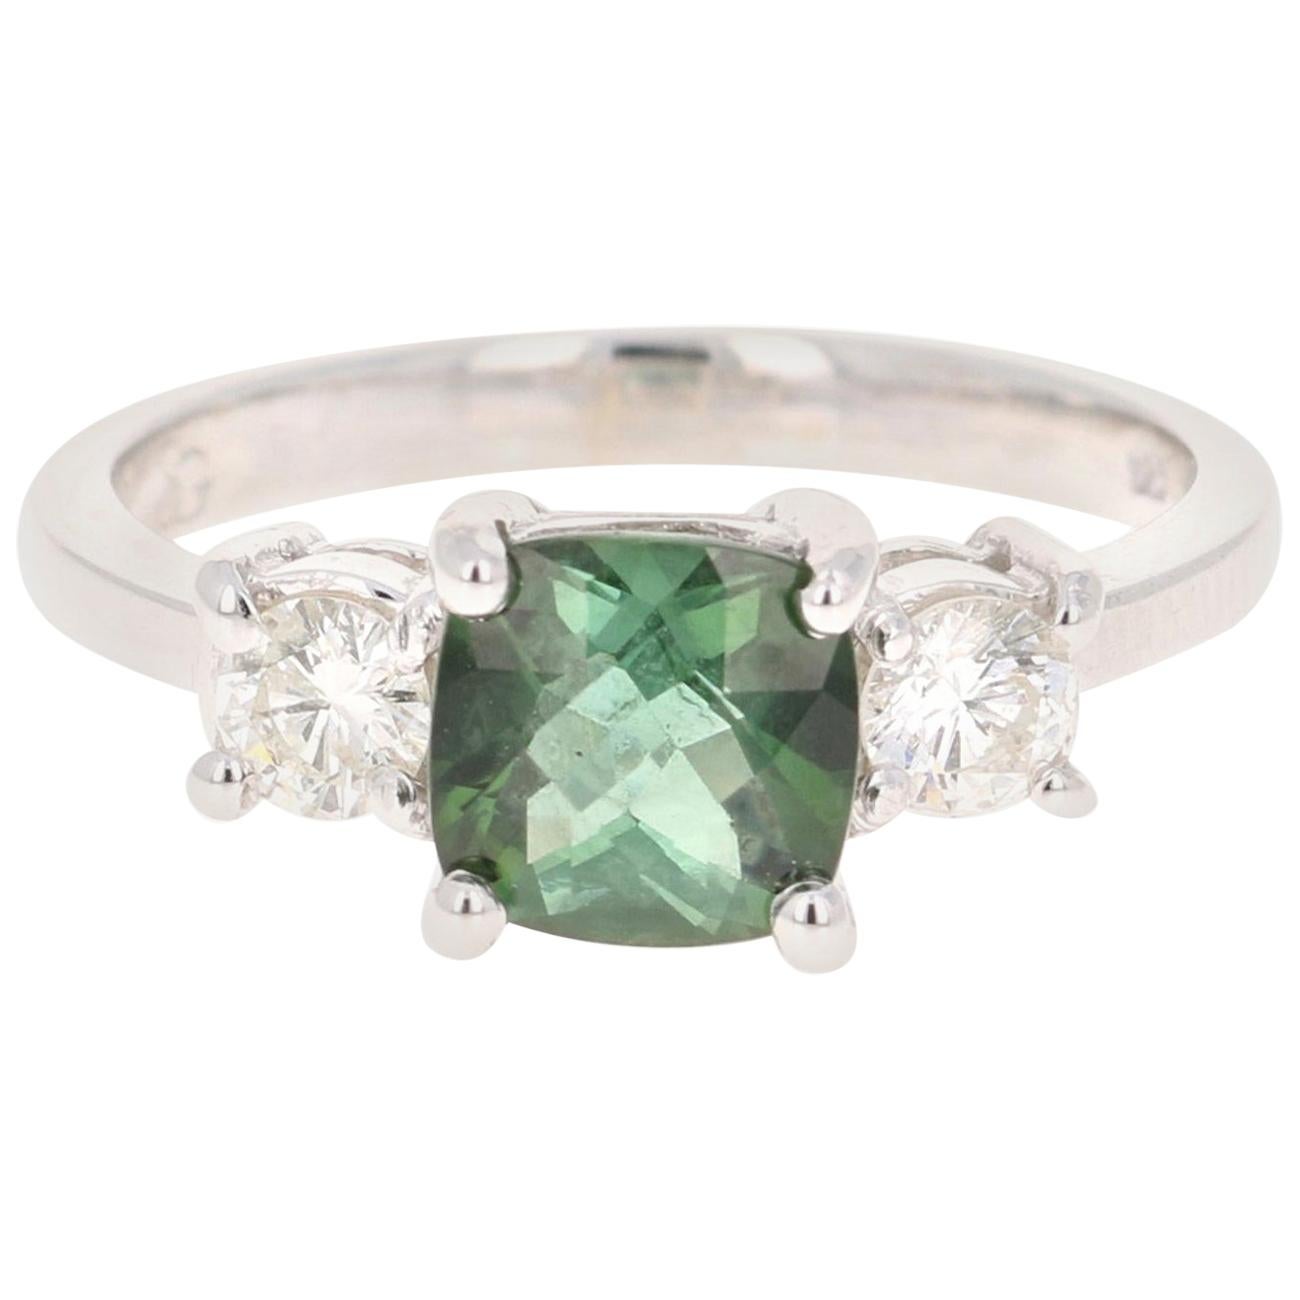 1.80 Carat Green Tourmaline Diamond Ring 14 Karat White Gold Three-Stone Ring For Sale